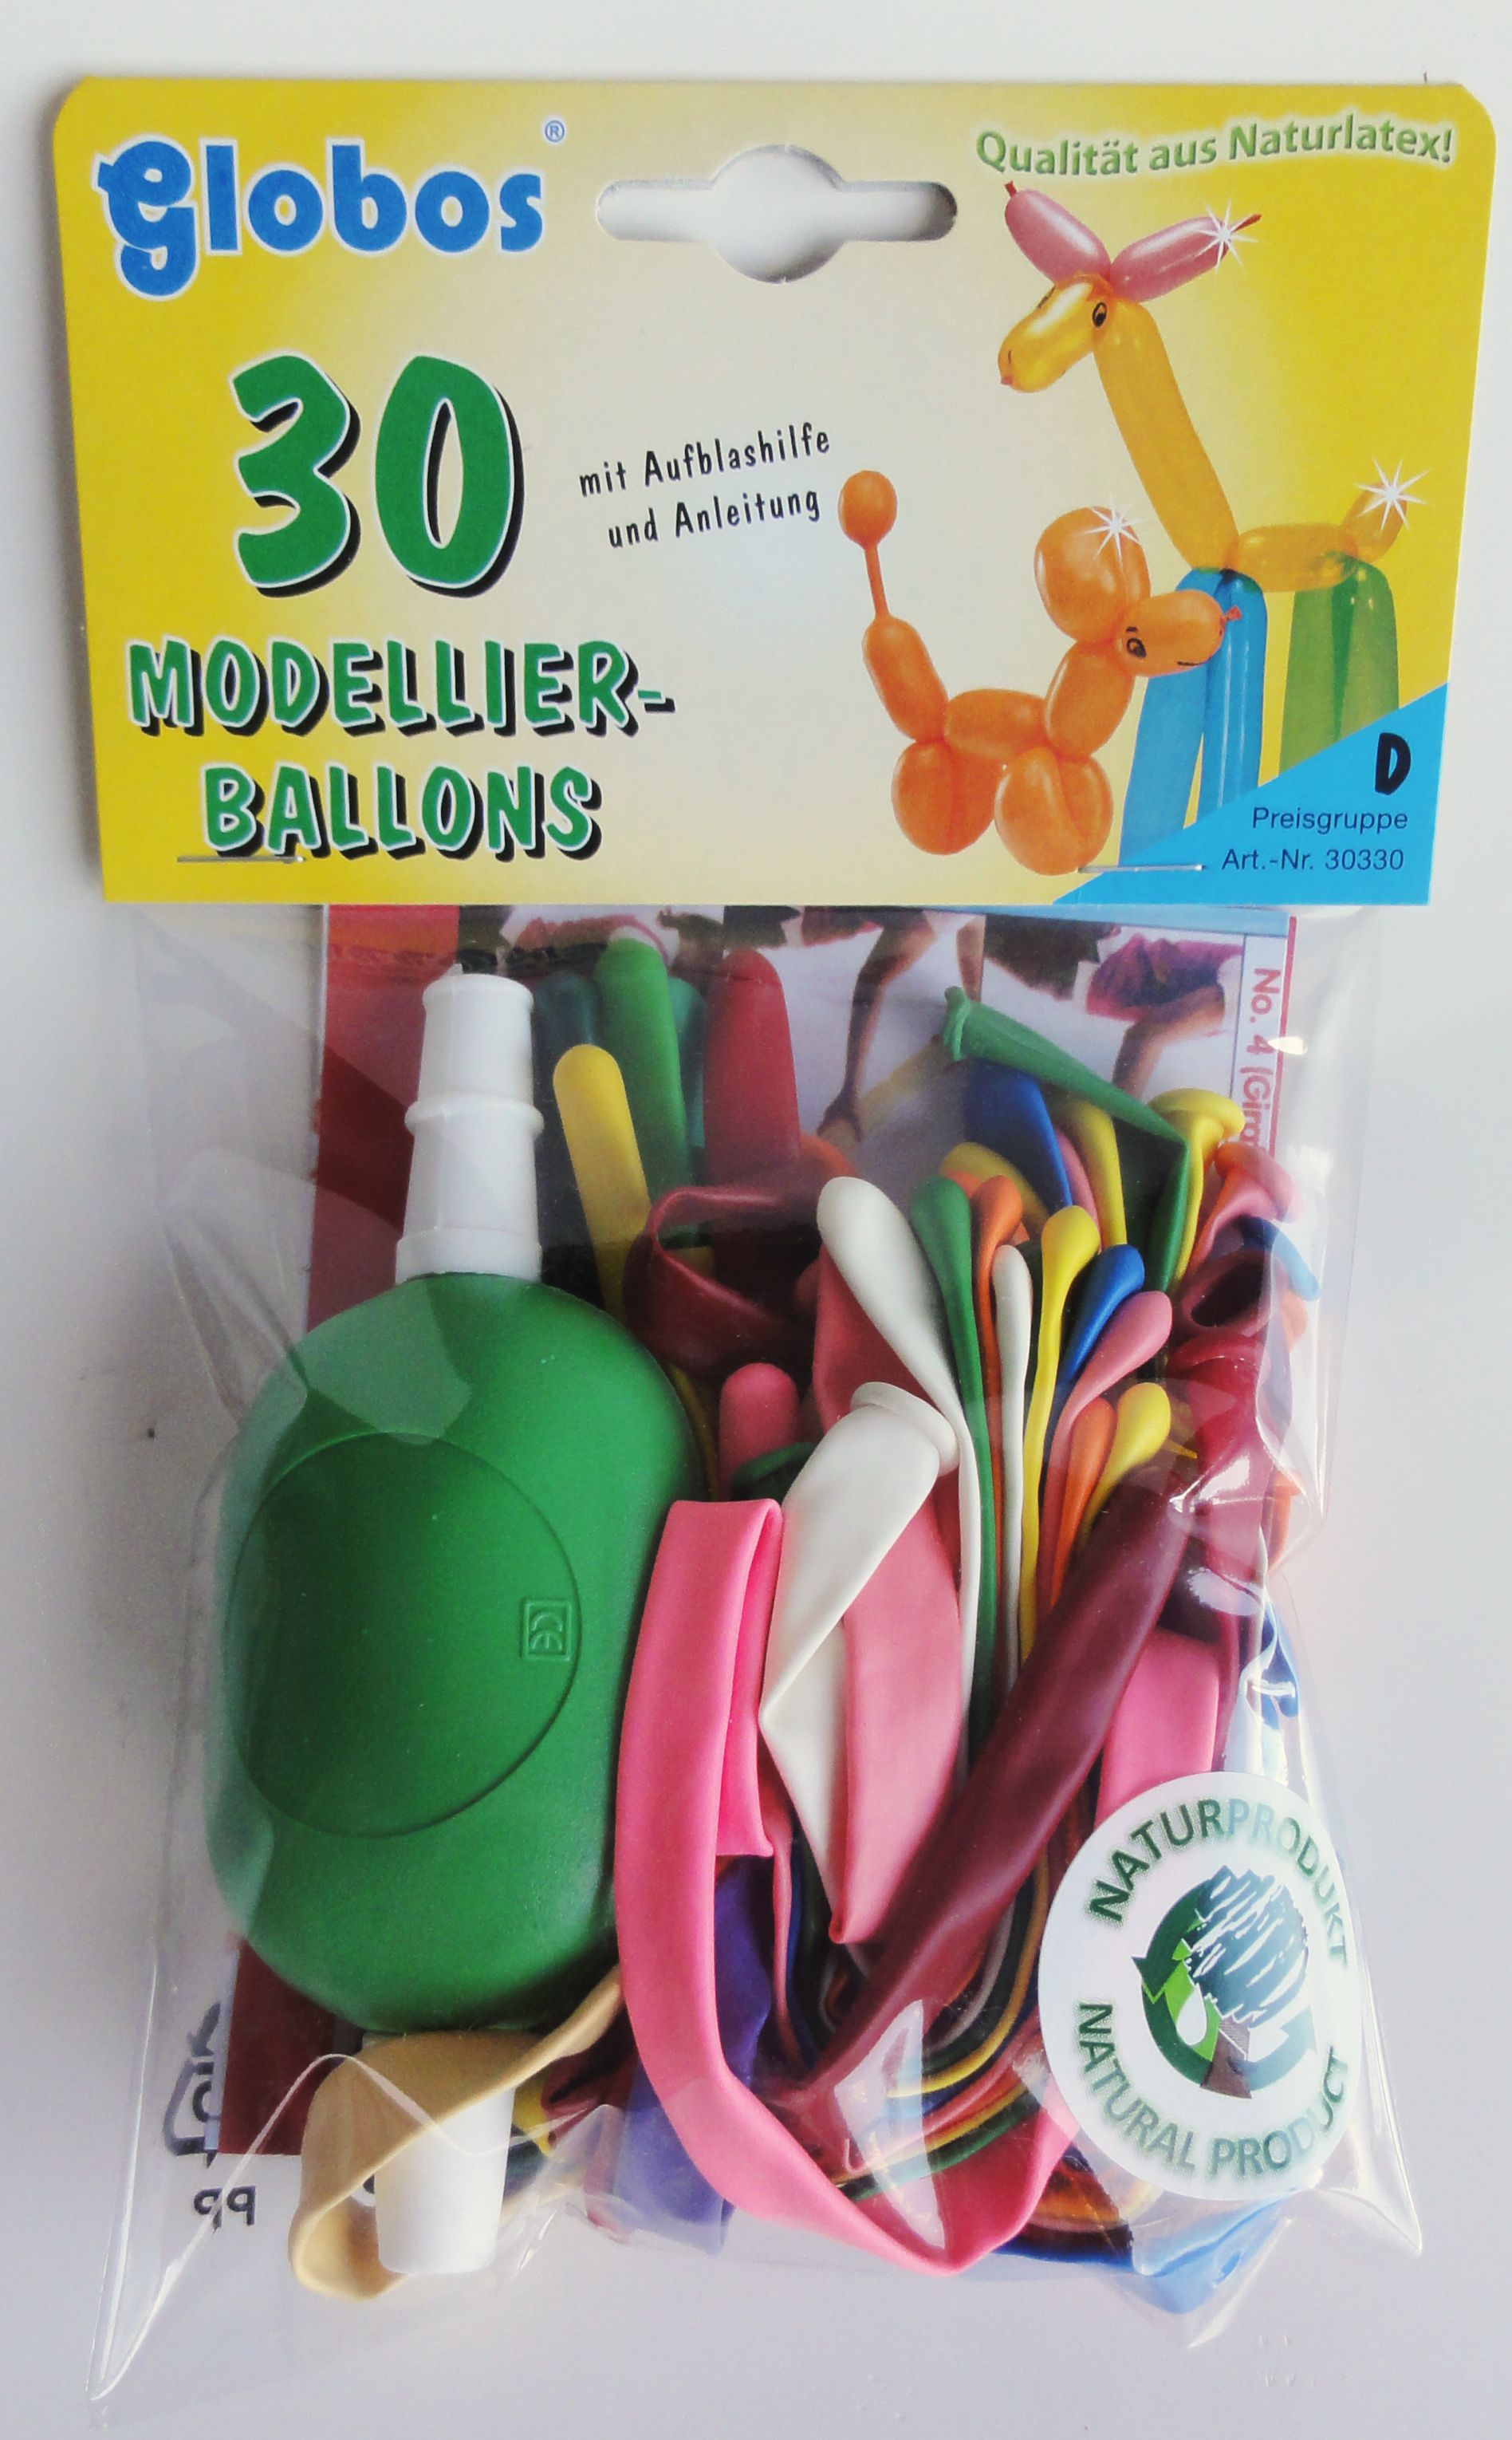 Modellierballons 30 Stück mit Aufblashilfe und Anleitung